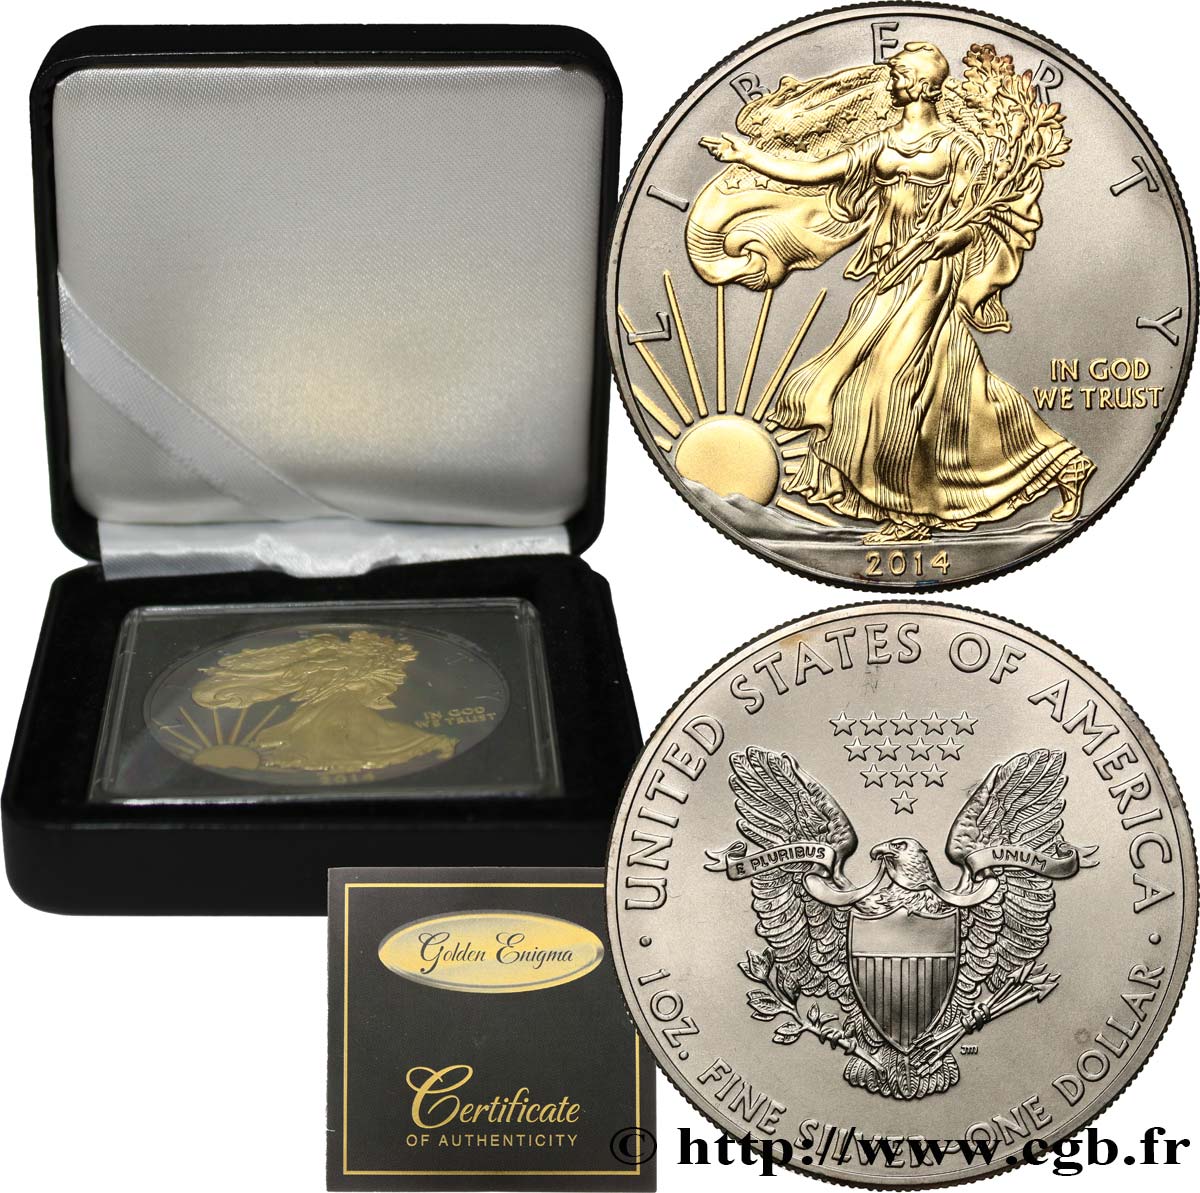 ESTADOS UNIDOS DE AMÉRICA 1 Dollar type Liberty Silver Eagle 2014  FDC 